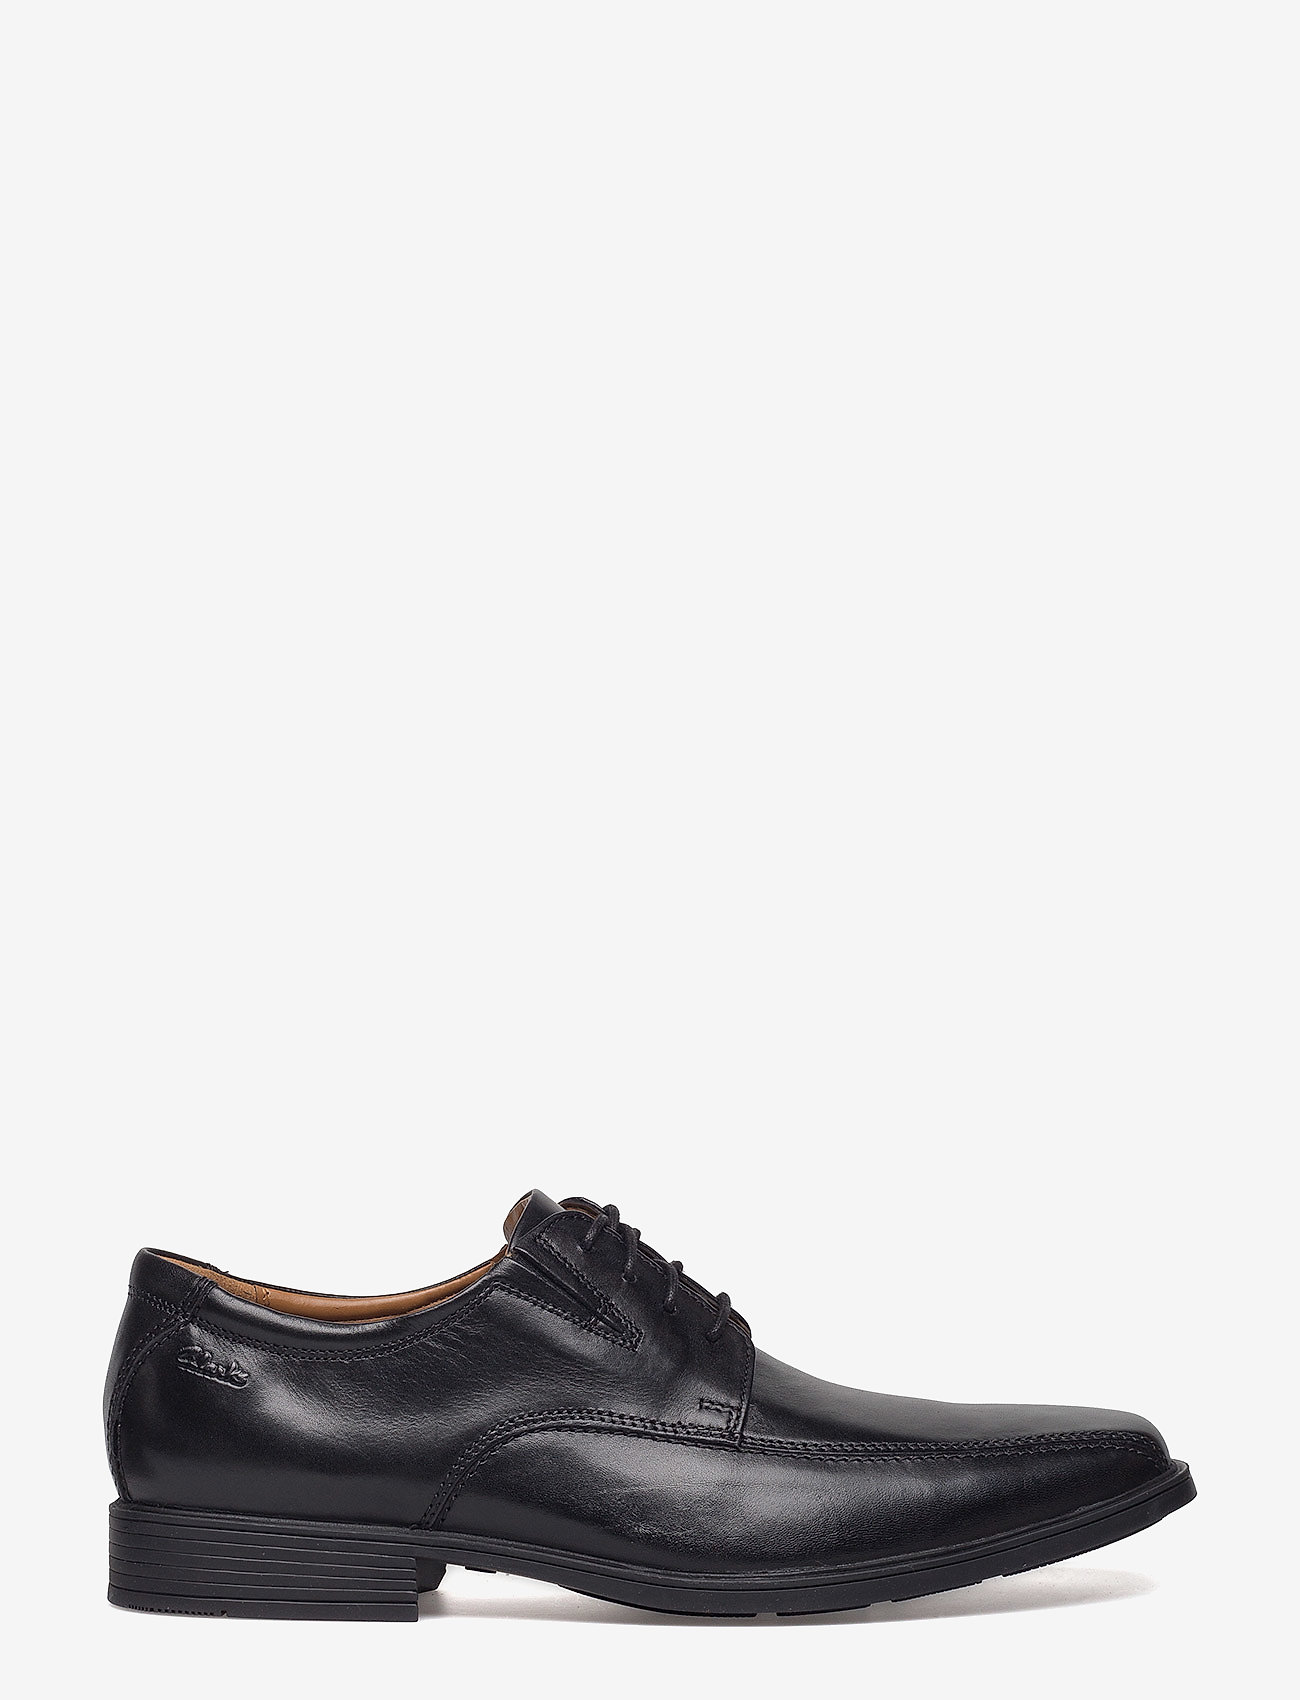 Clarks - Tilden Walk - laced shoes - black leather - 1